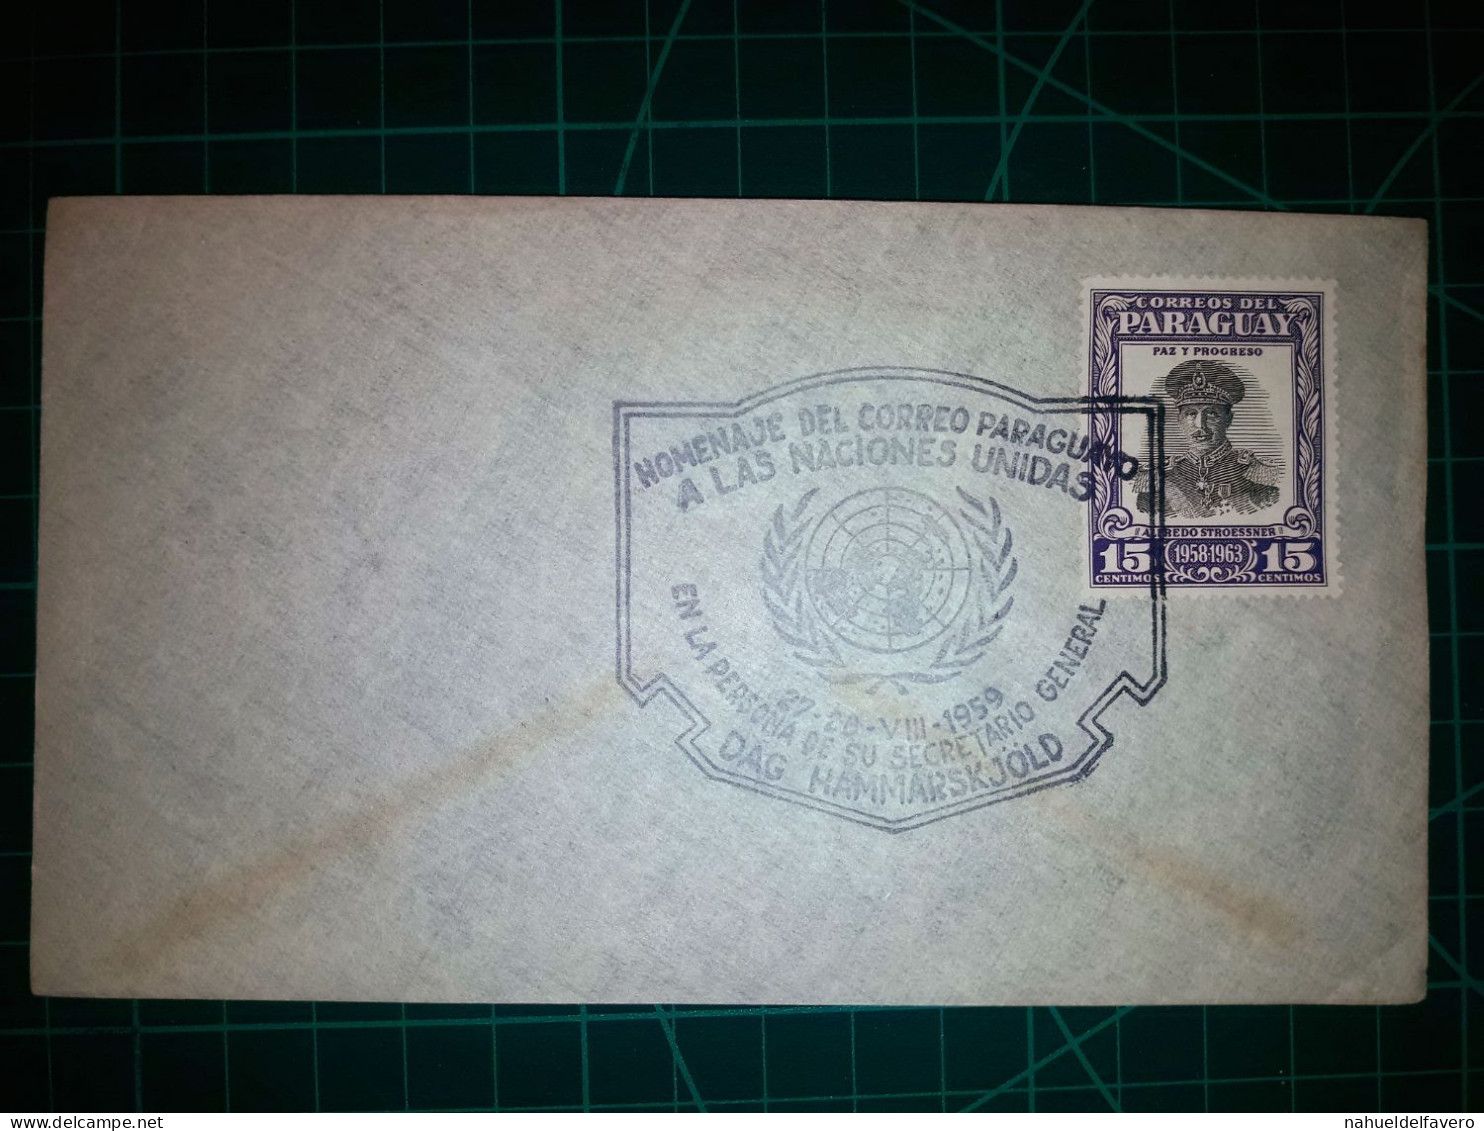 PARAGUAY, Enveloppe Avec Cachet Spécial De "Hommage De La Poste Paraguayenne Aux Nations Unies". Timbre-poste : Alfredo - Paraguay